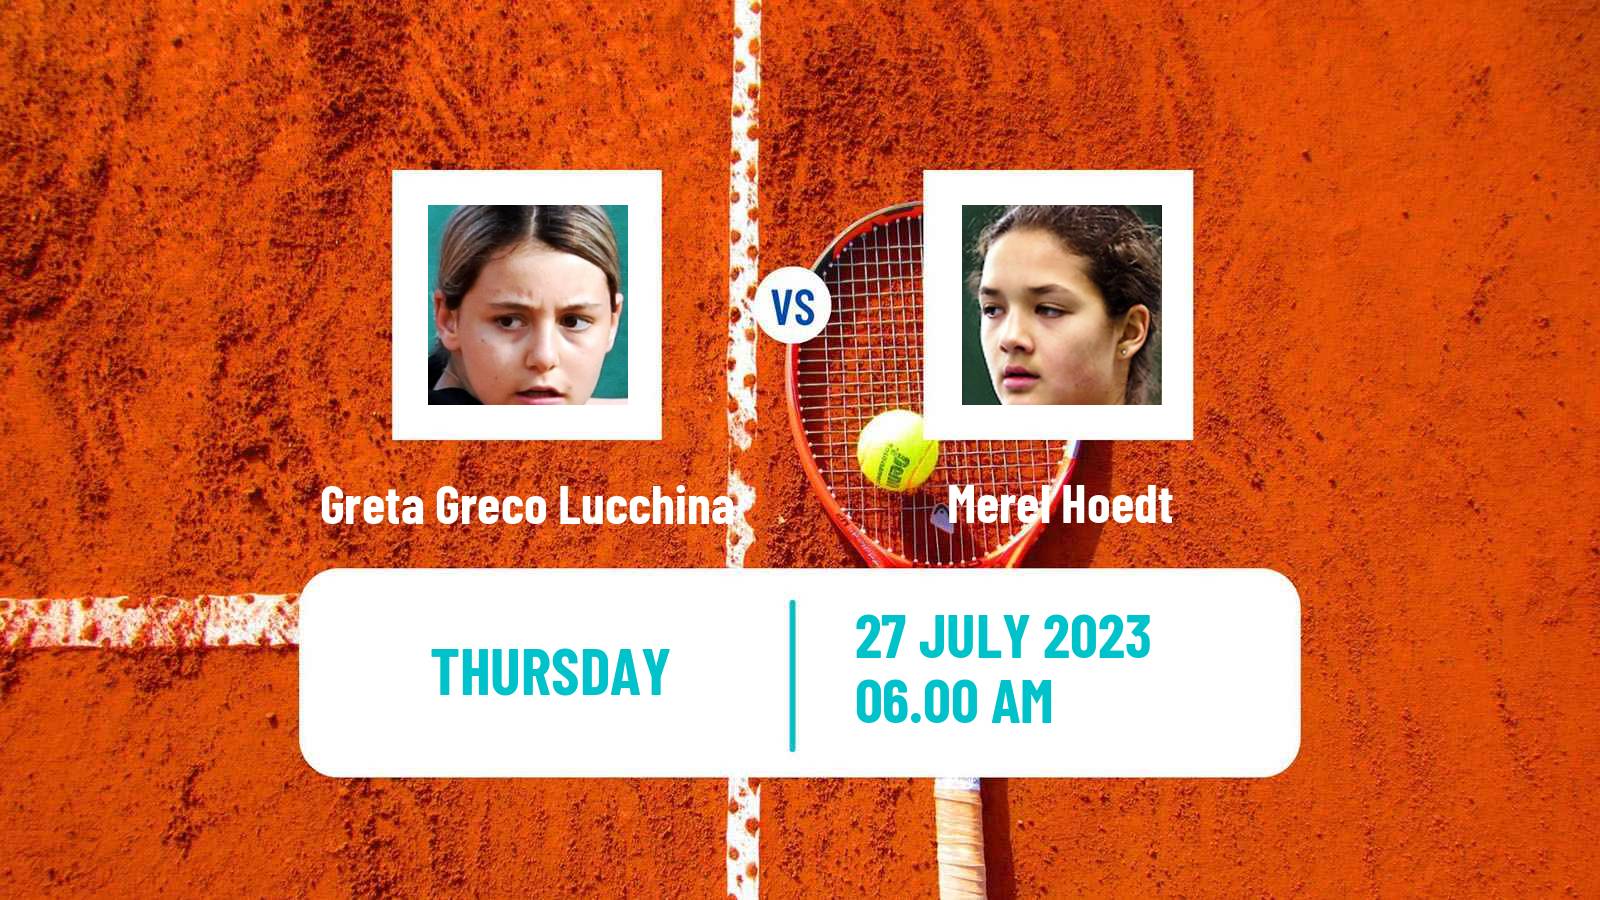 Tennis ITF W15 Casablanca 2 Women Greta Greco Lucchina - Merel Hoedt